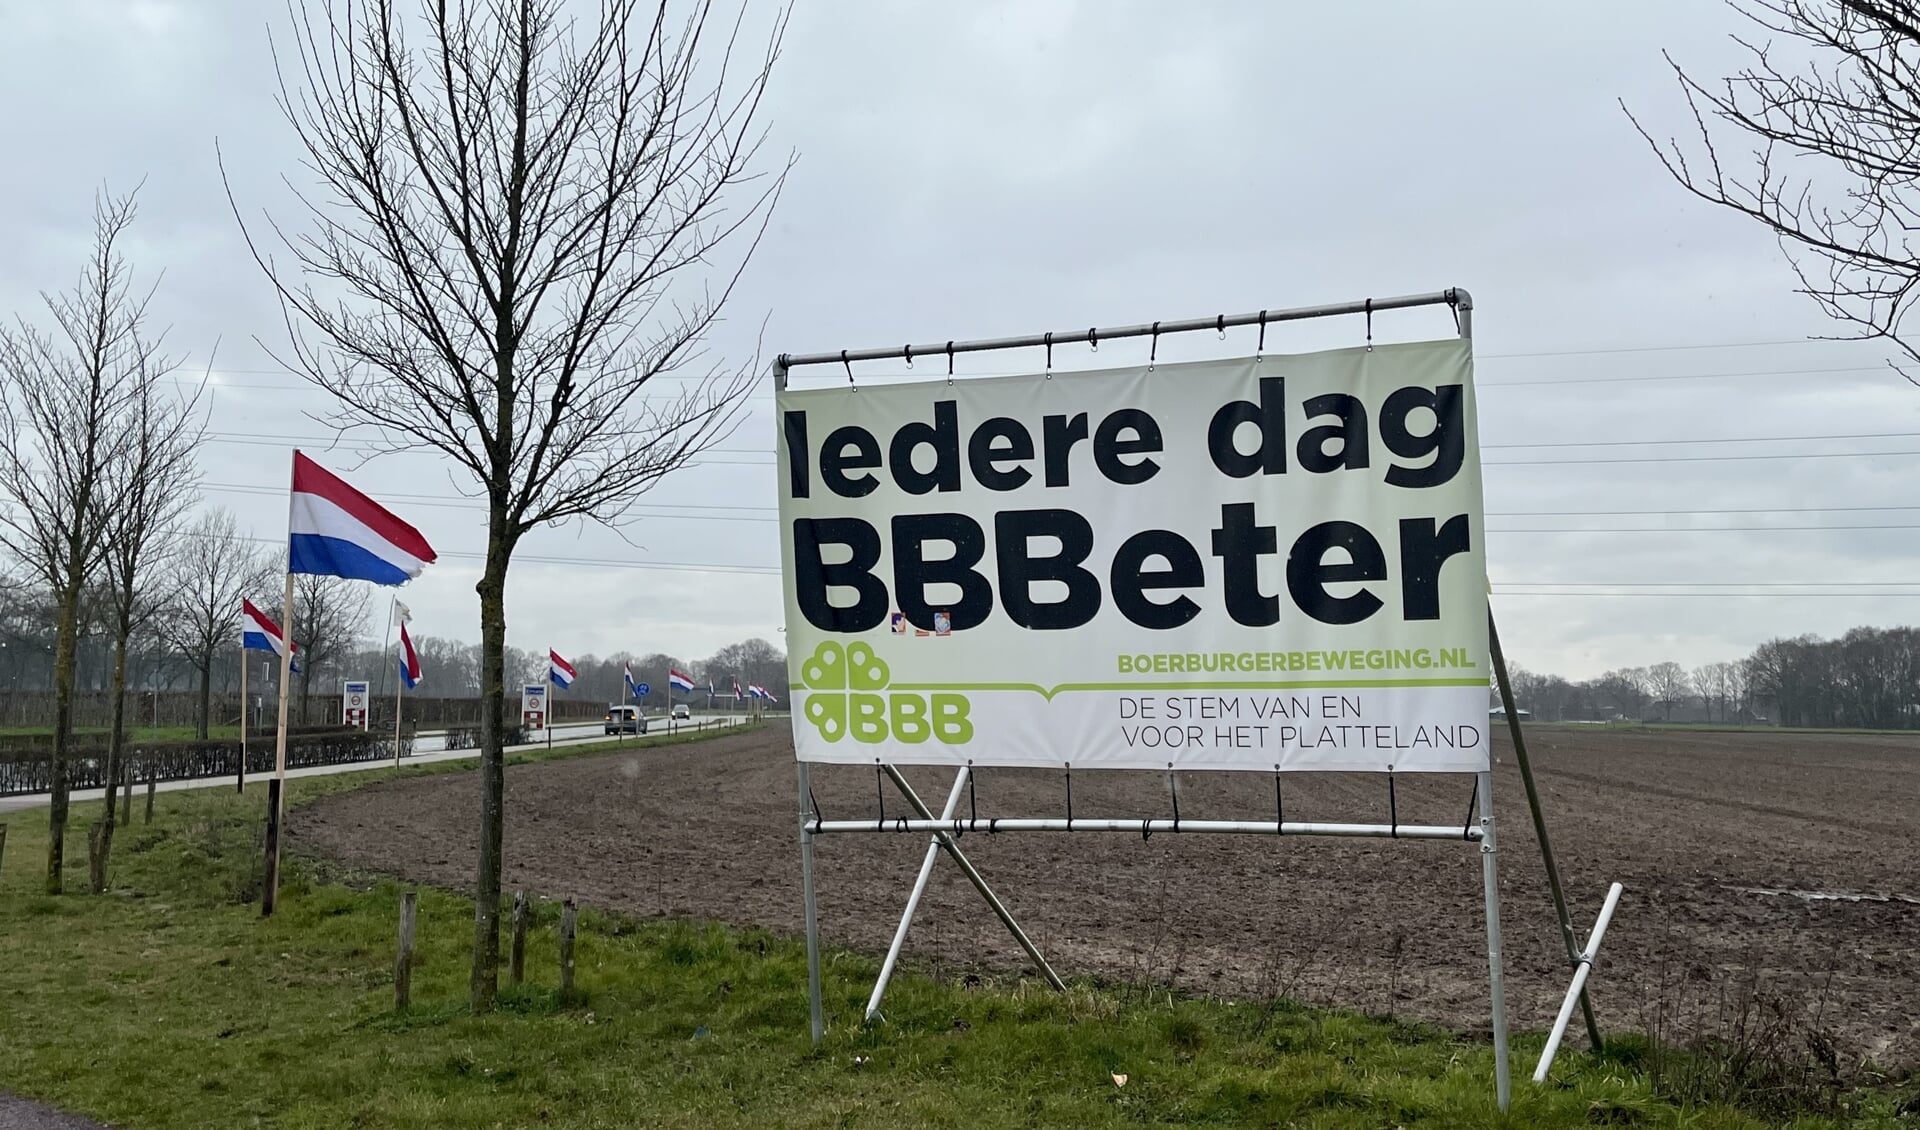 Het Ermelo's Weekblad vroeg de Ermeloër naar zijn gevoel bij de verkiezingsuitslag van de provinciale staten-verkiezingen, waarbij de BoerBurgerBeweging (BBB) de grootste werd.